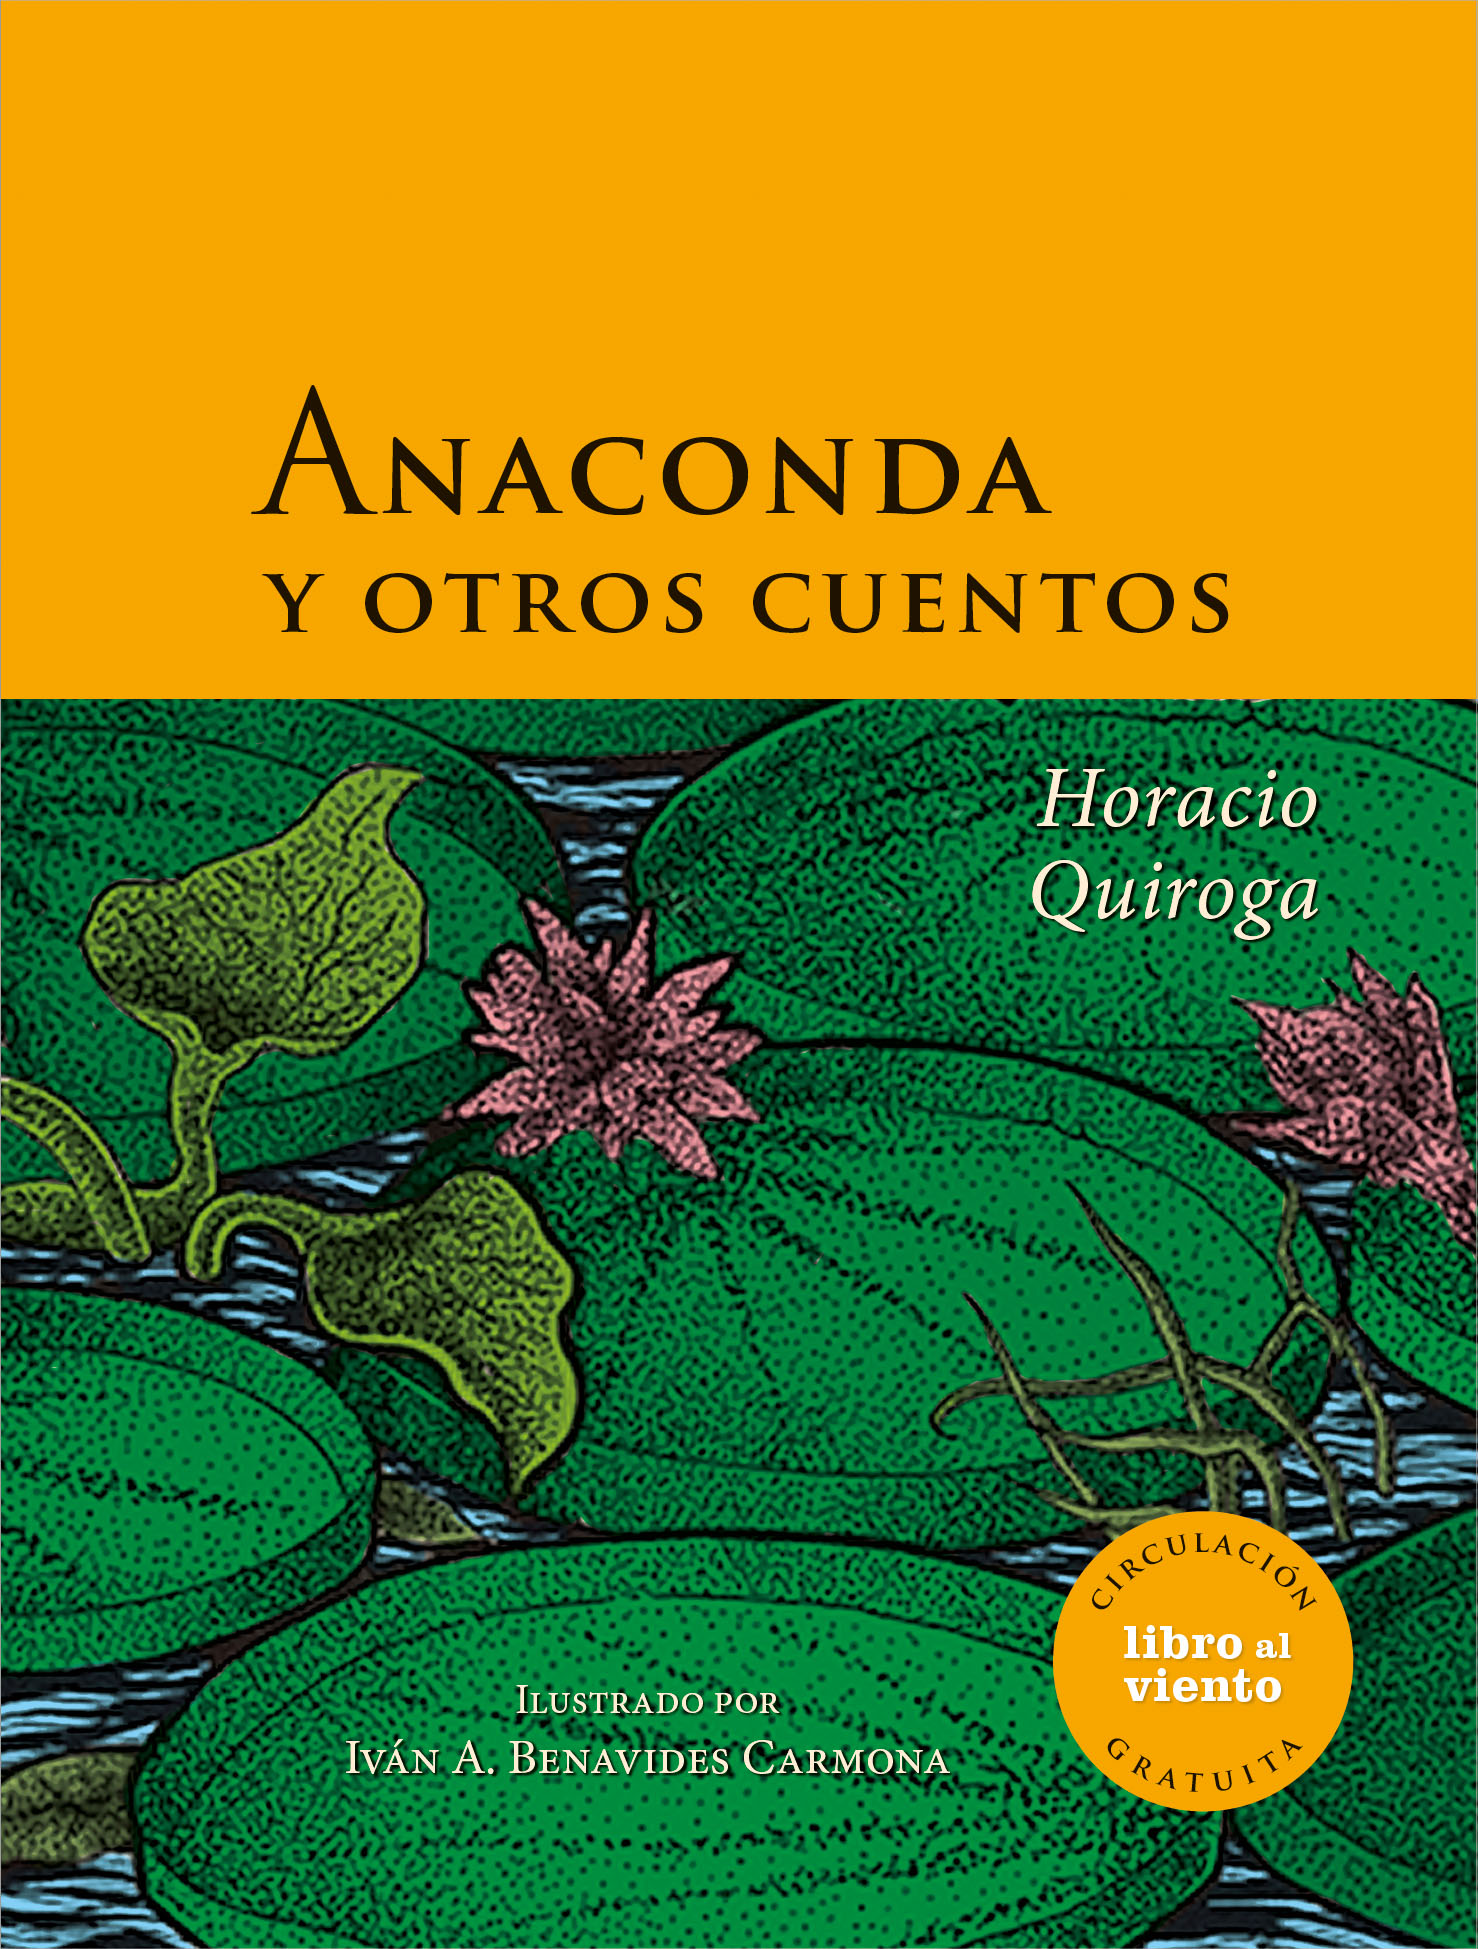 Anaconda y otros cuentos, Horacio Quiroga.